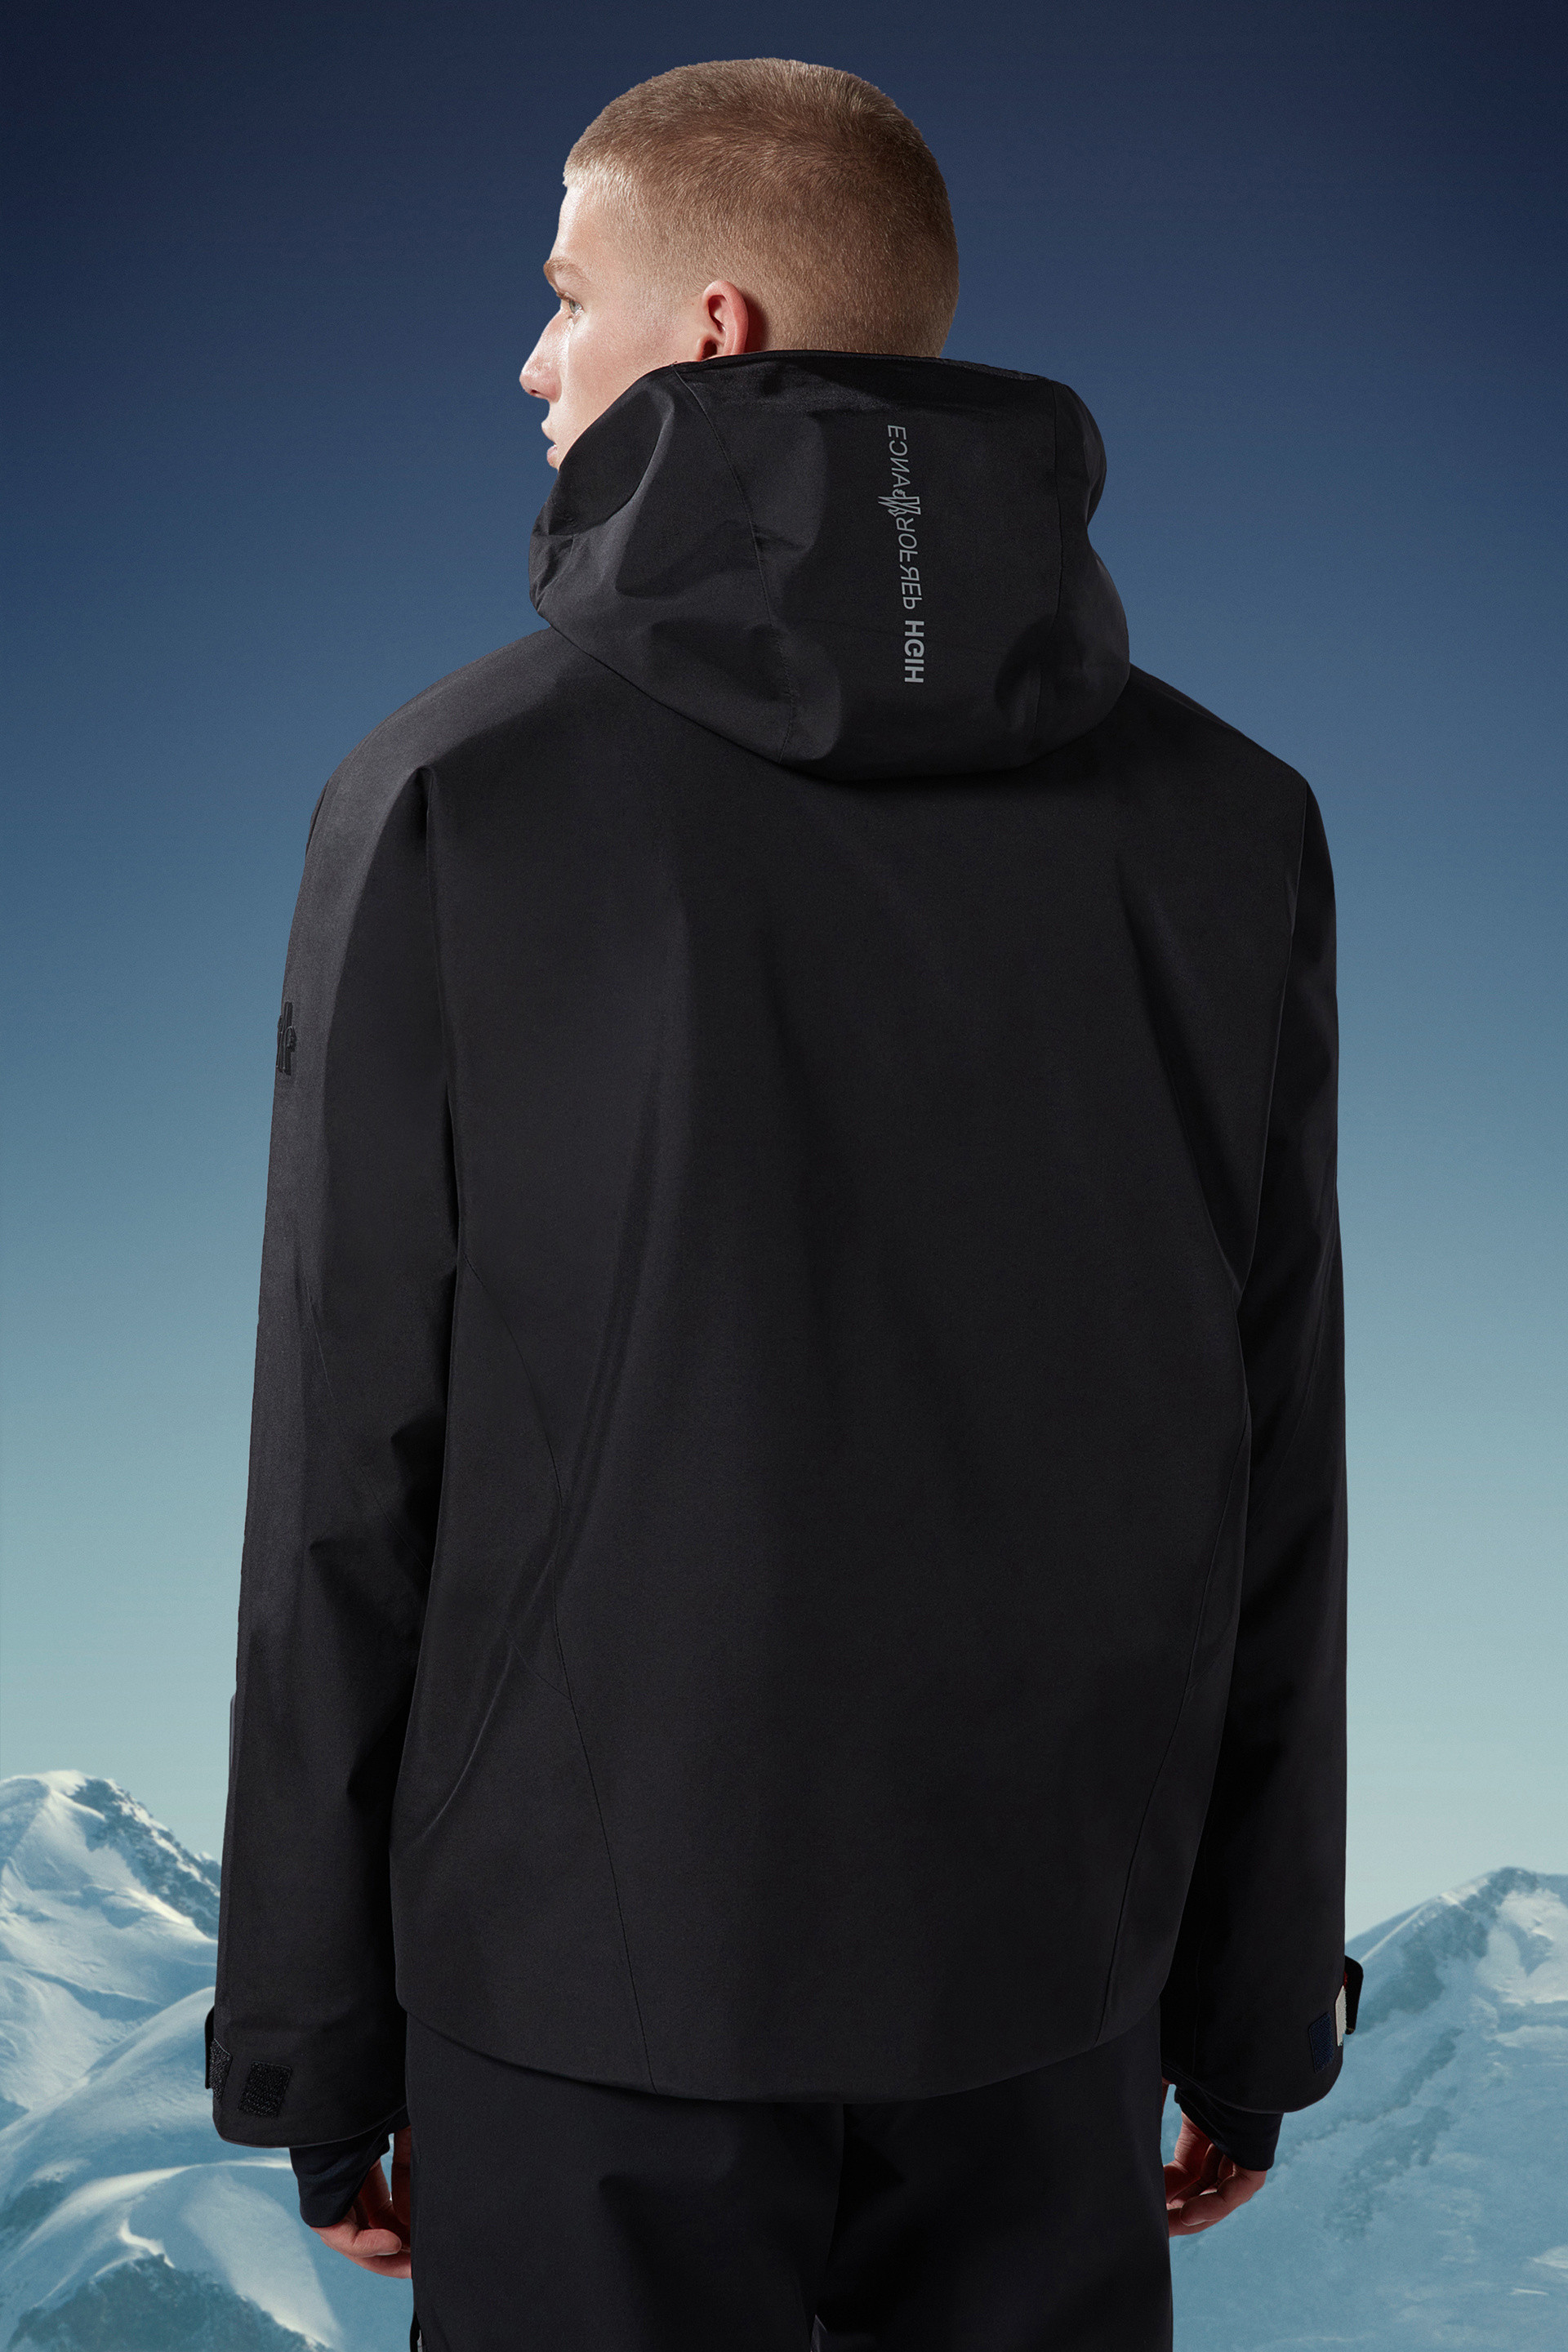 ブラック Lapazジャケット : ウインドブレーカーとレインコート 向けの 